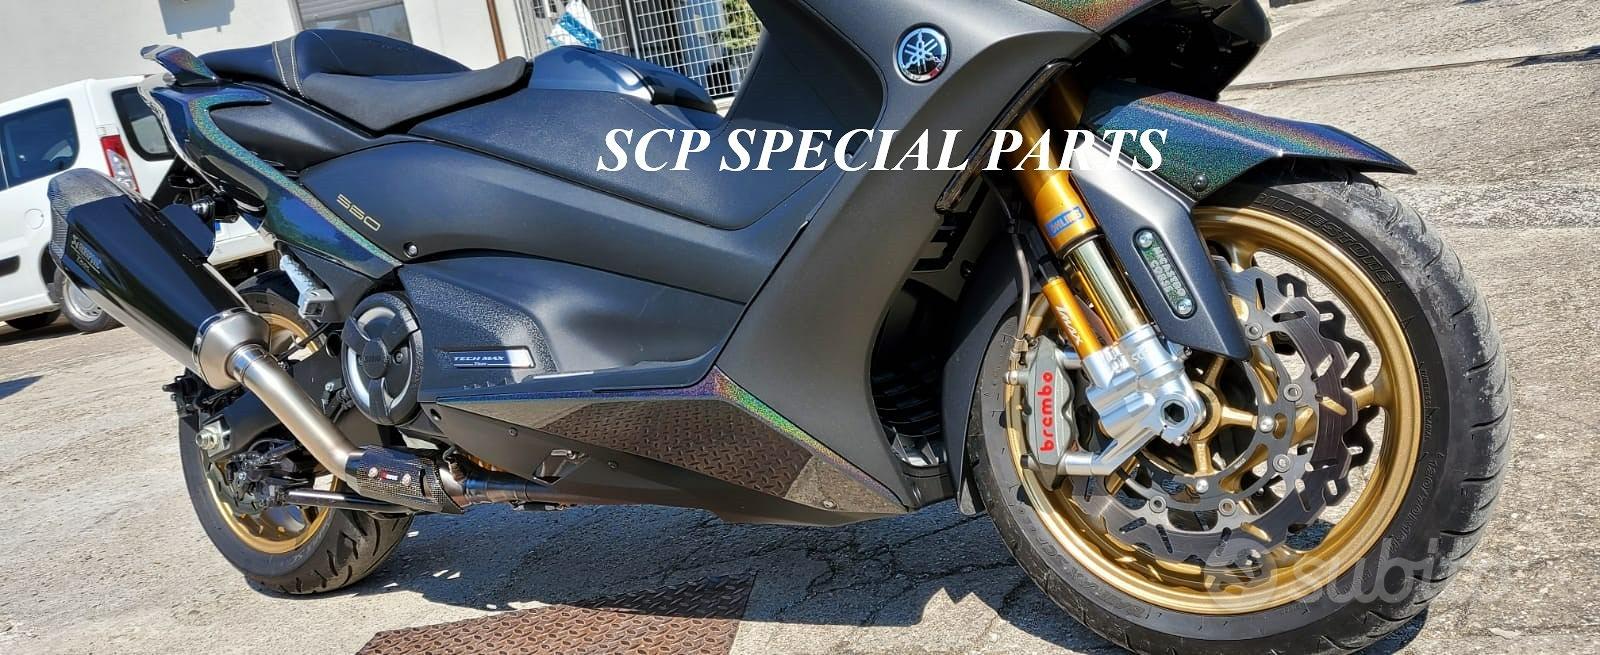 Subito - SCP SPECIAL PARTS - SUPERBIKE CARBON PARTS - Forcelle ohlins freni  brembo yamaha t max 560 530 - Accessori Moto In vendita a La Spezia